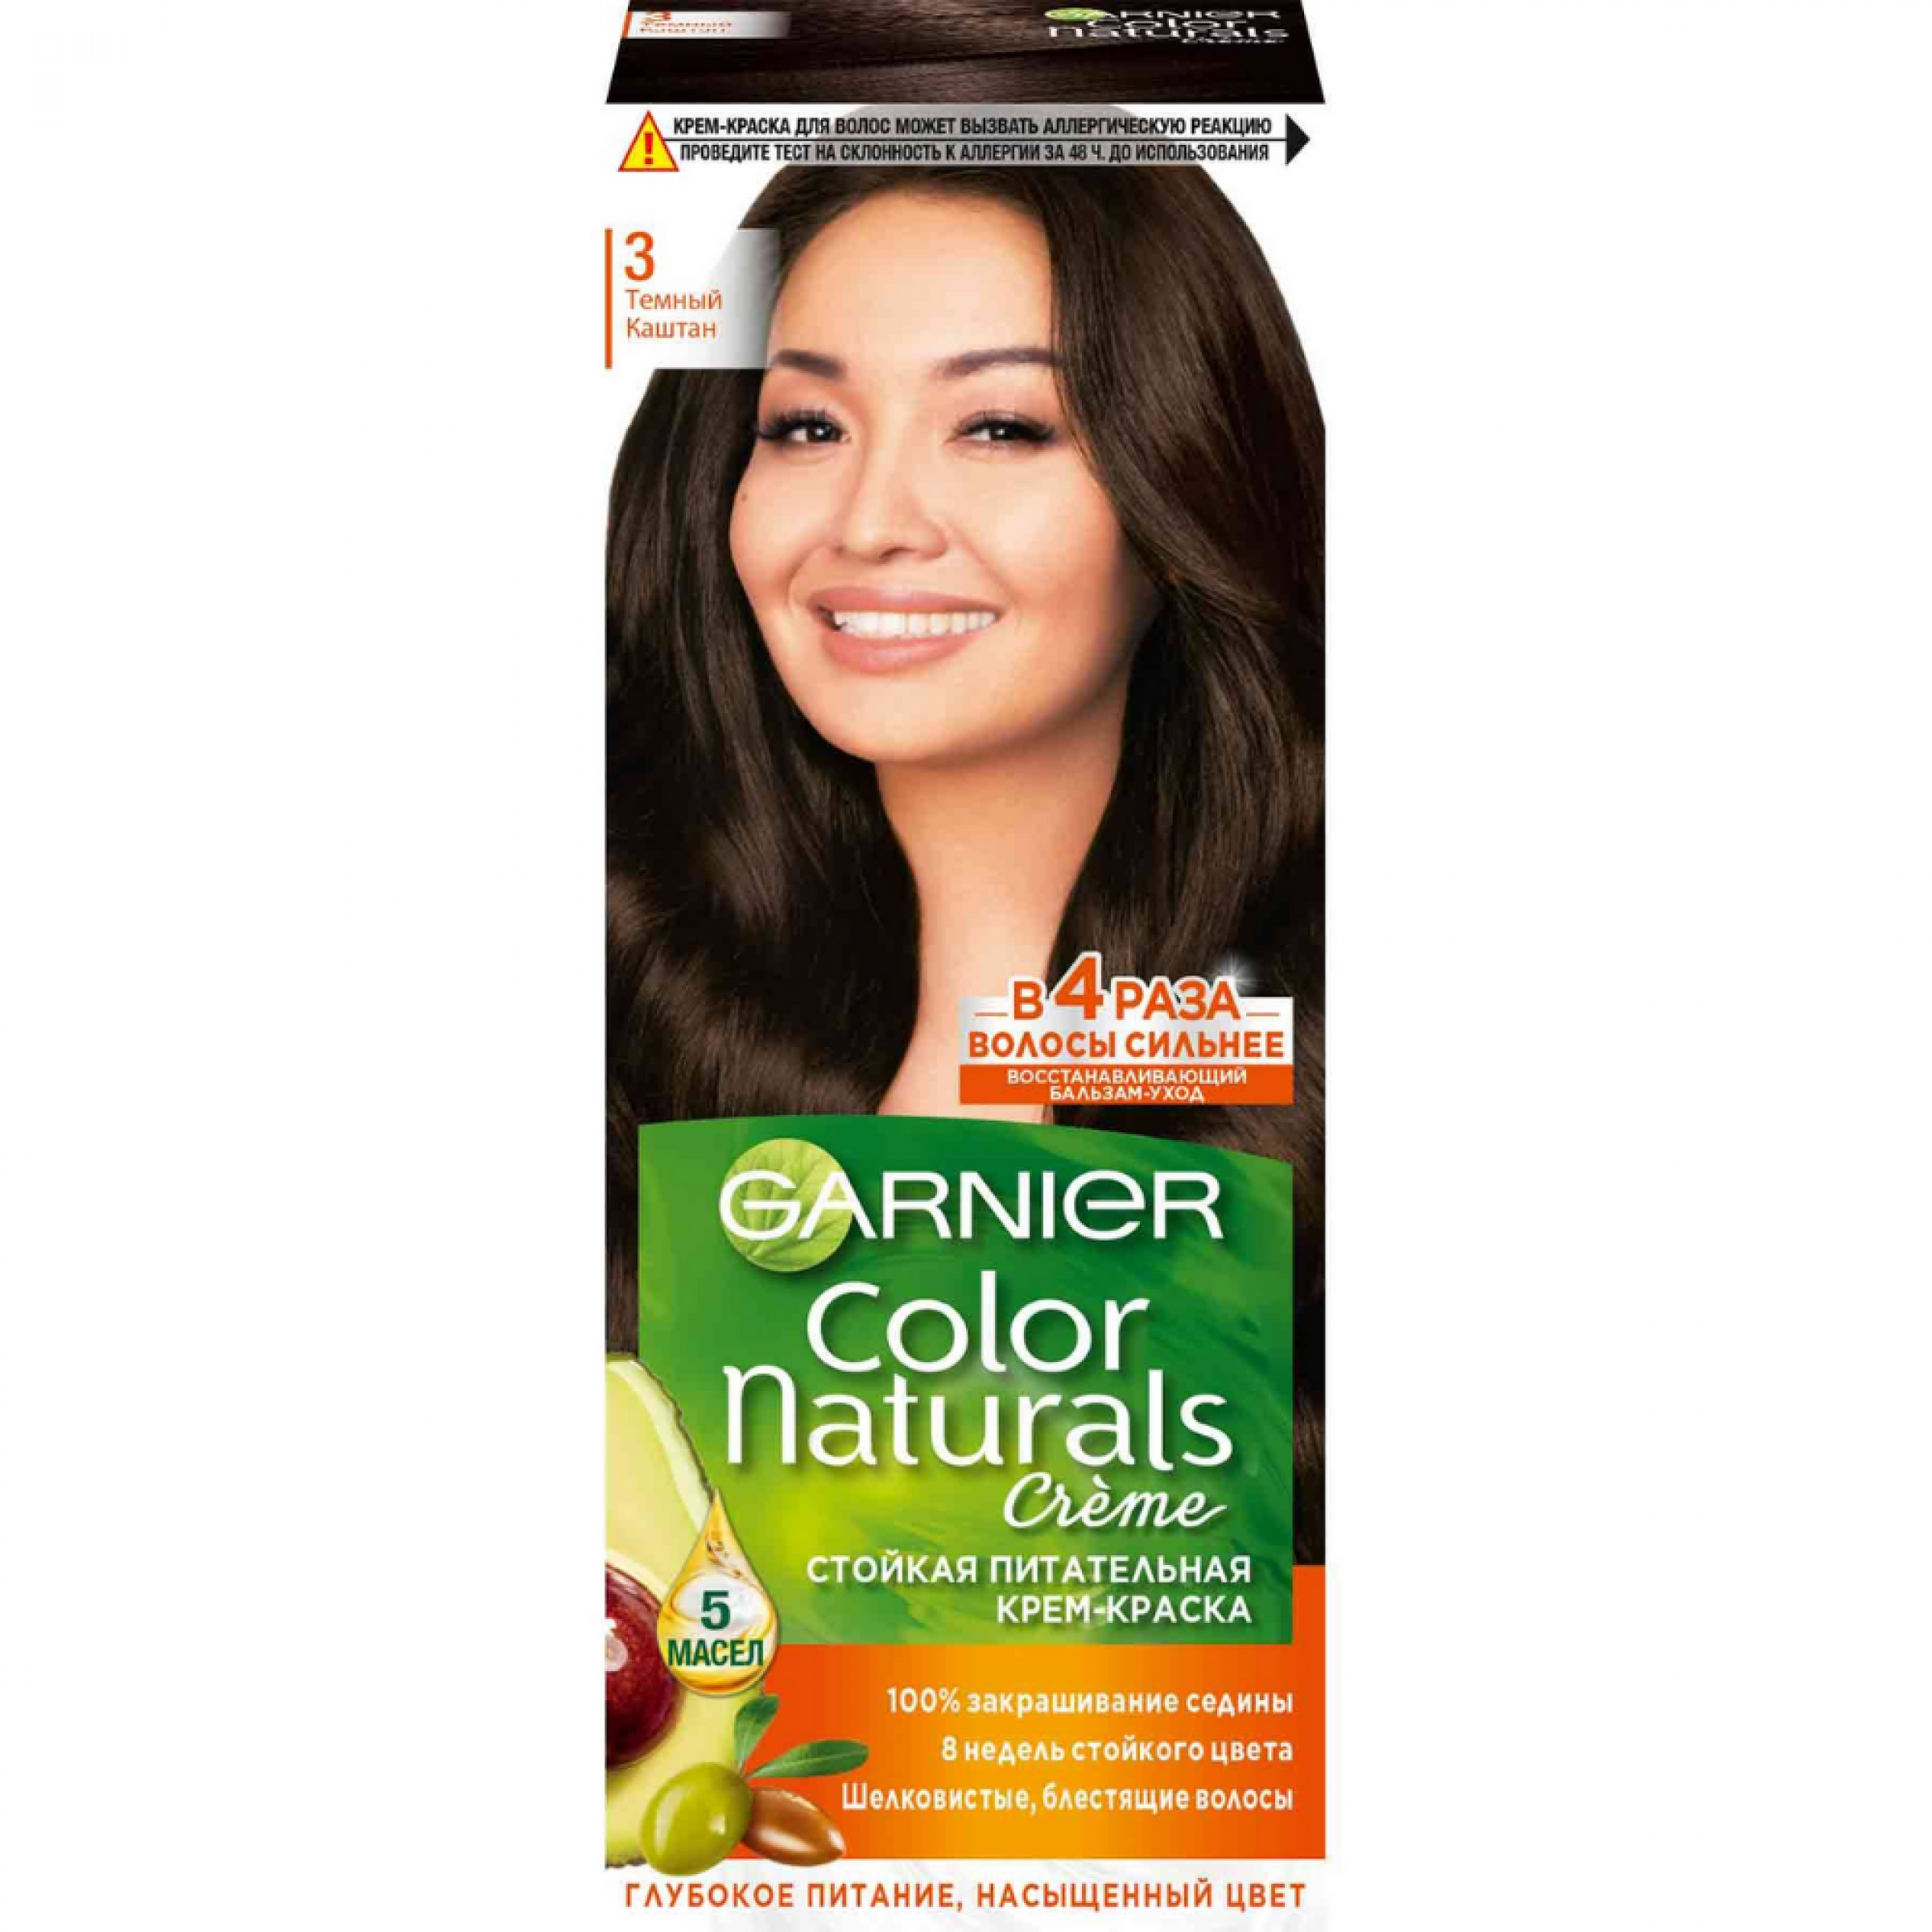 Стойкая крем-краска для волос Garnier Color Naturals с 3 маслами, оттенок 3, Темный каштан, 110 мл